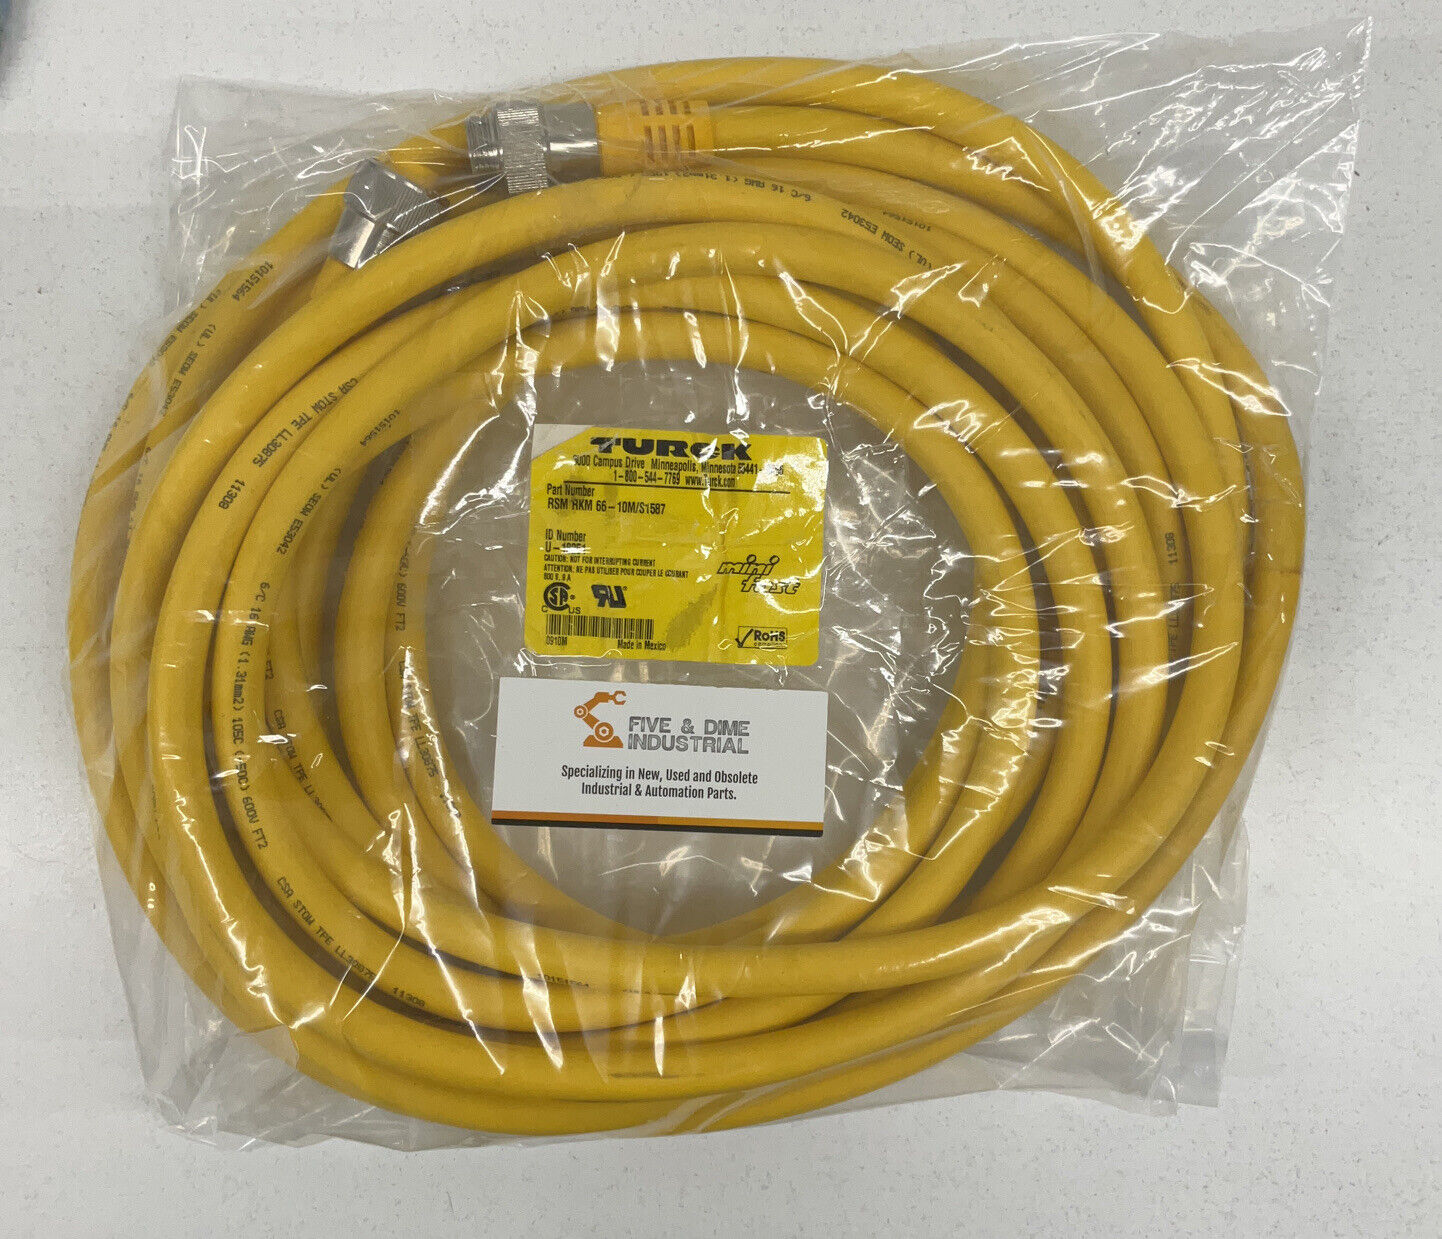 Turck RSM RKM 66-10M/S1587 Mini Fast Cable U-18251 (CBL132)